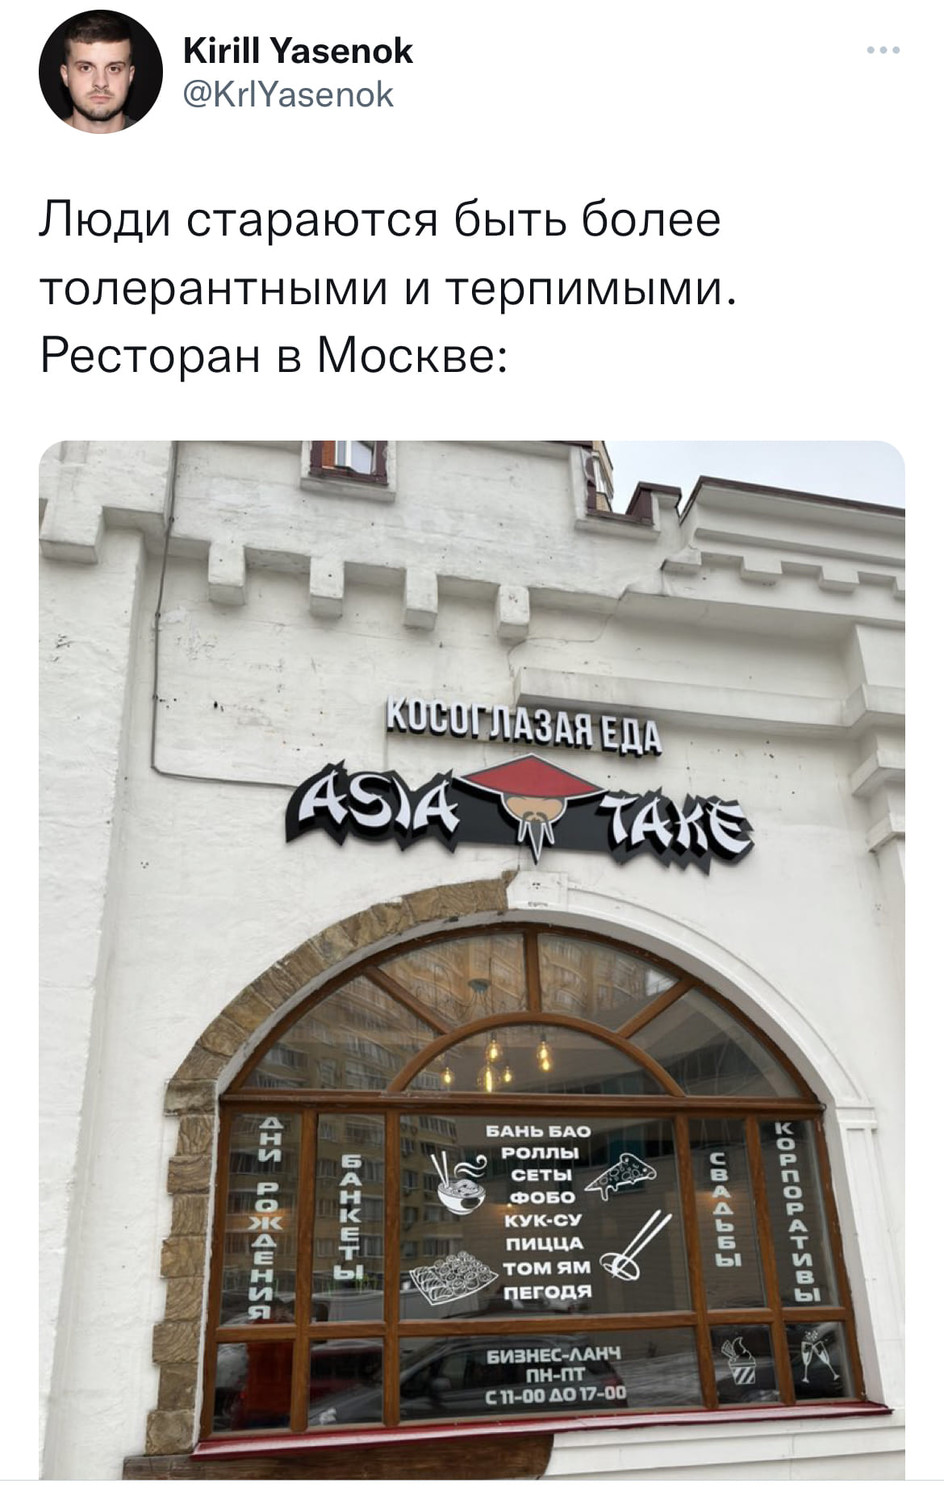 Люди стараются быть более толерантными и терпимыми. Ресторан в Москве:
* Надпись на вывеске ресторана китайской кухни: «Косоглазая еда» *